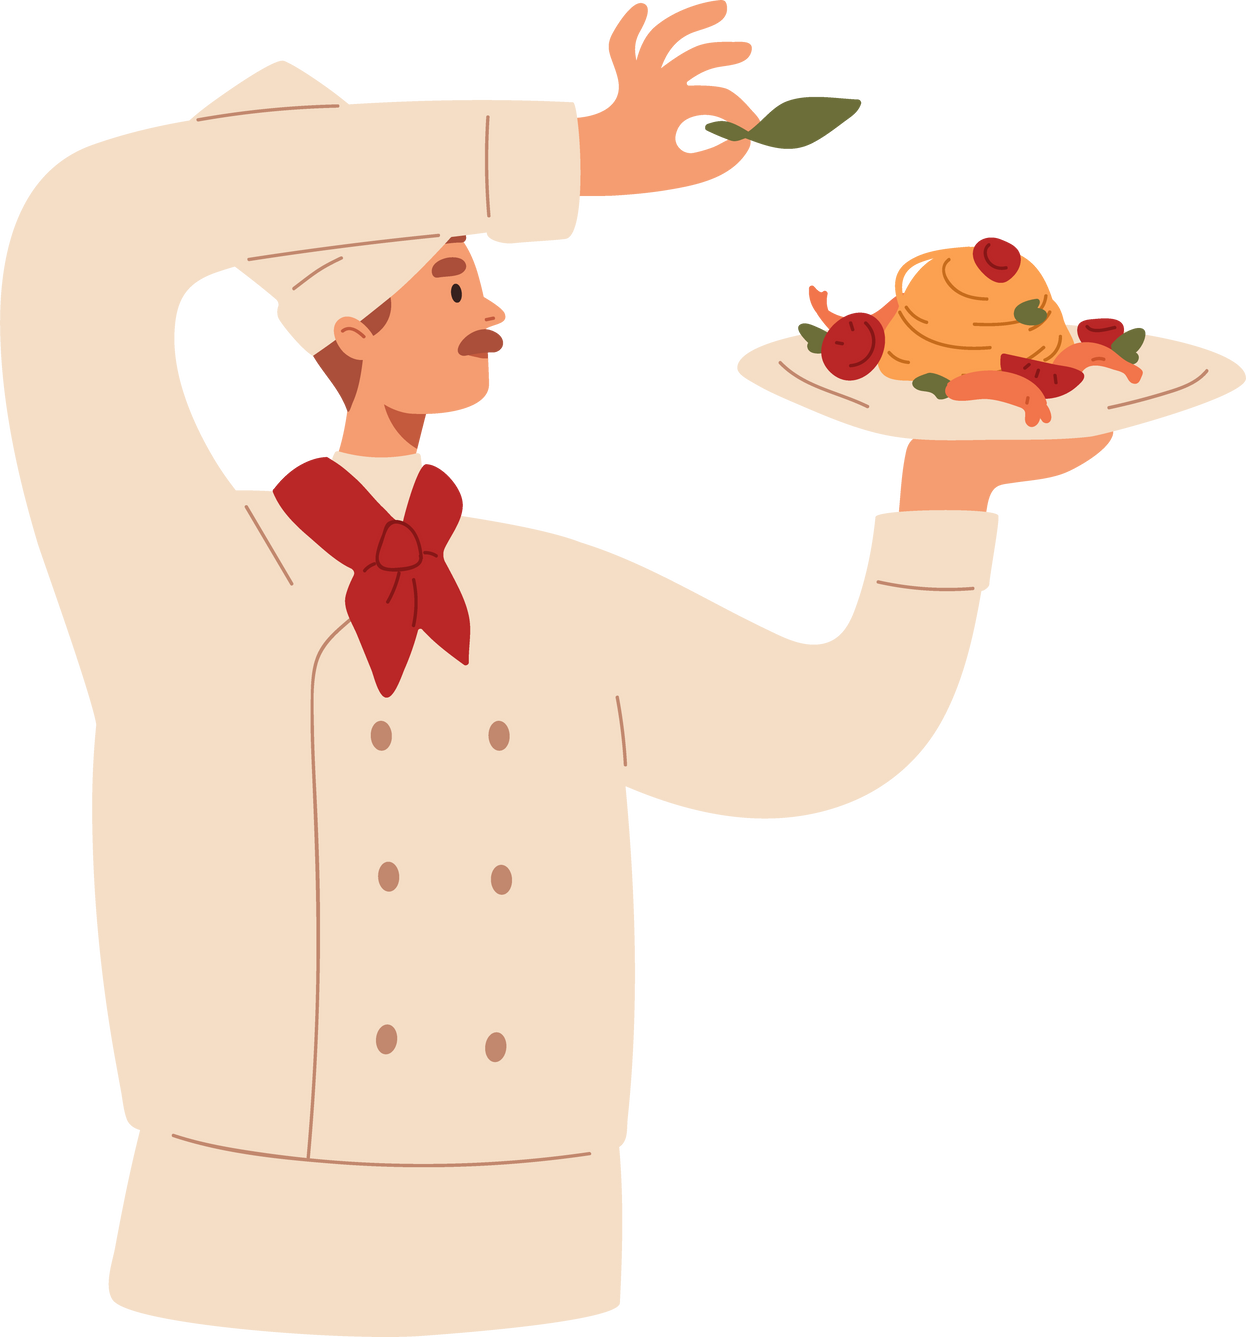 Chef Garnishing Food Illustration